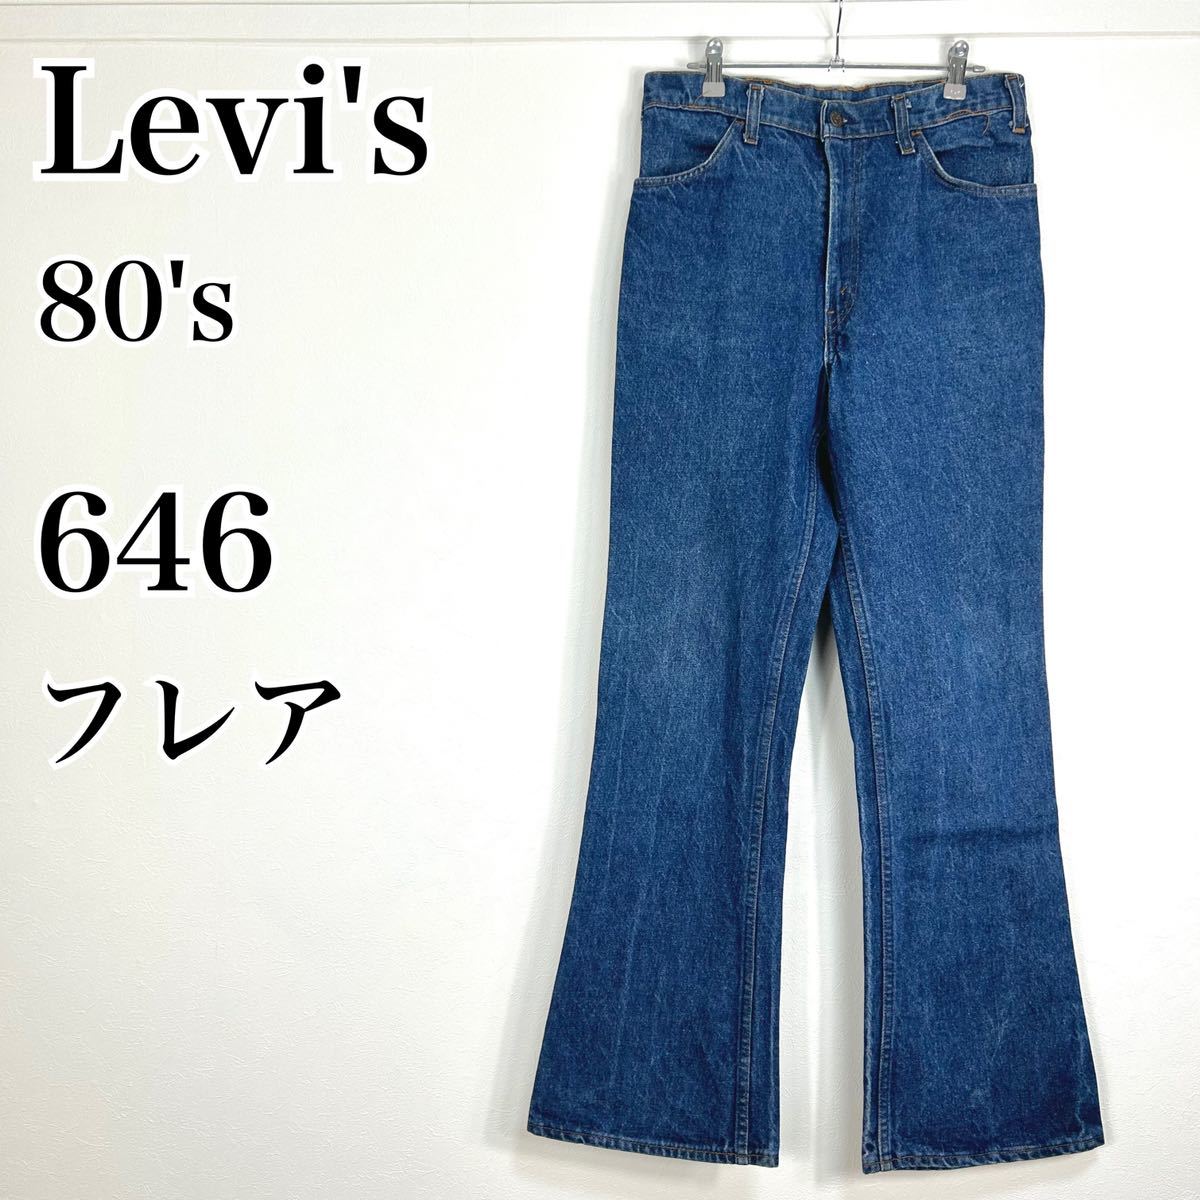 年レディースファッション福袋特集 Levi's 's  ベルボトム